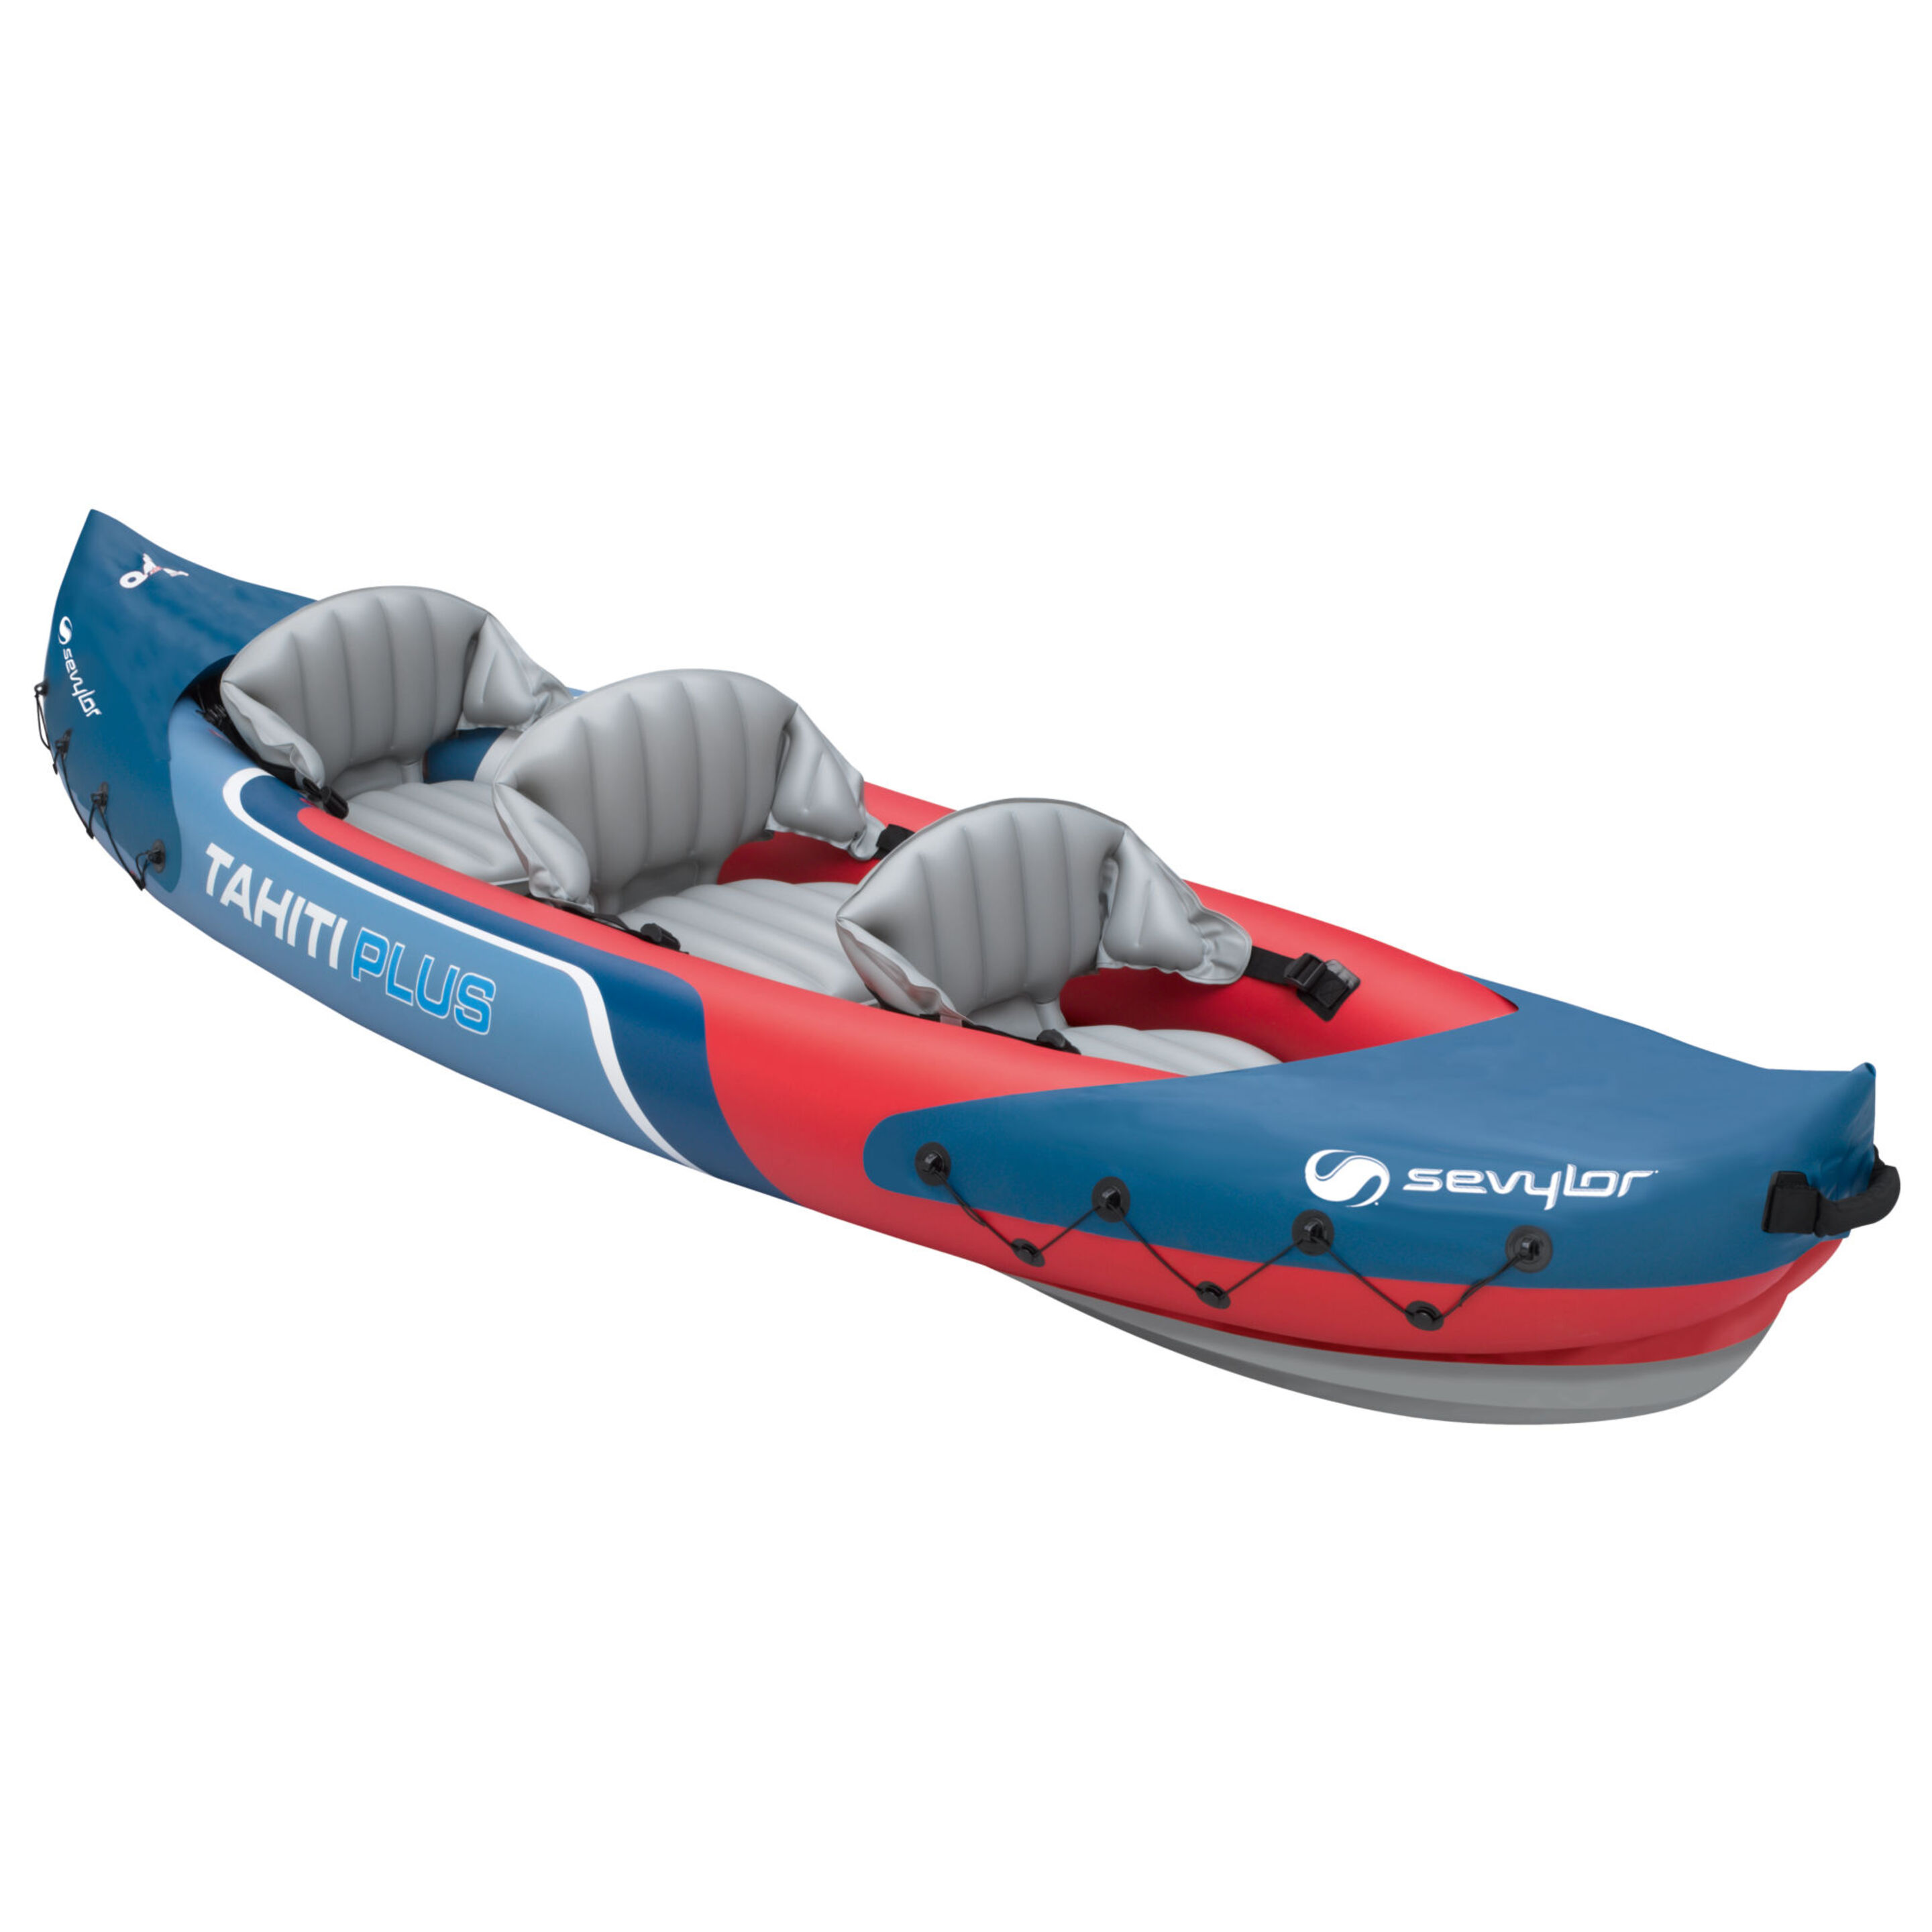 Kayak Hinchable Sevylor Tahiti Plus - sin-color - 